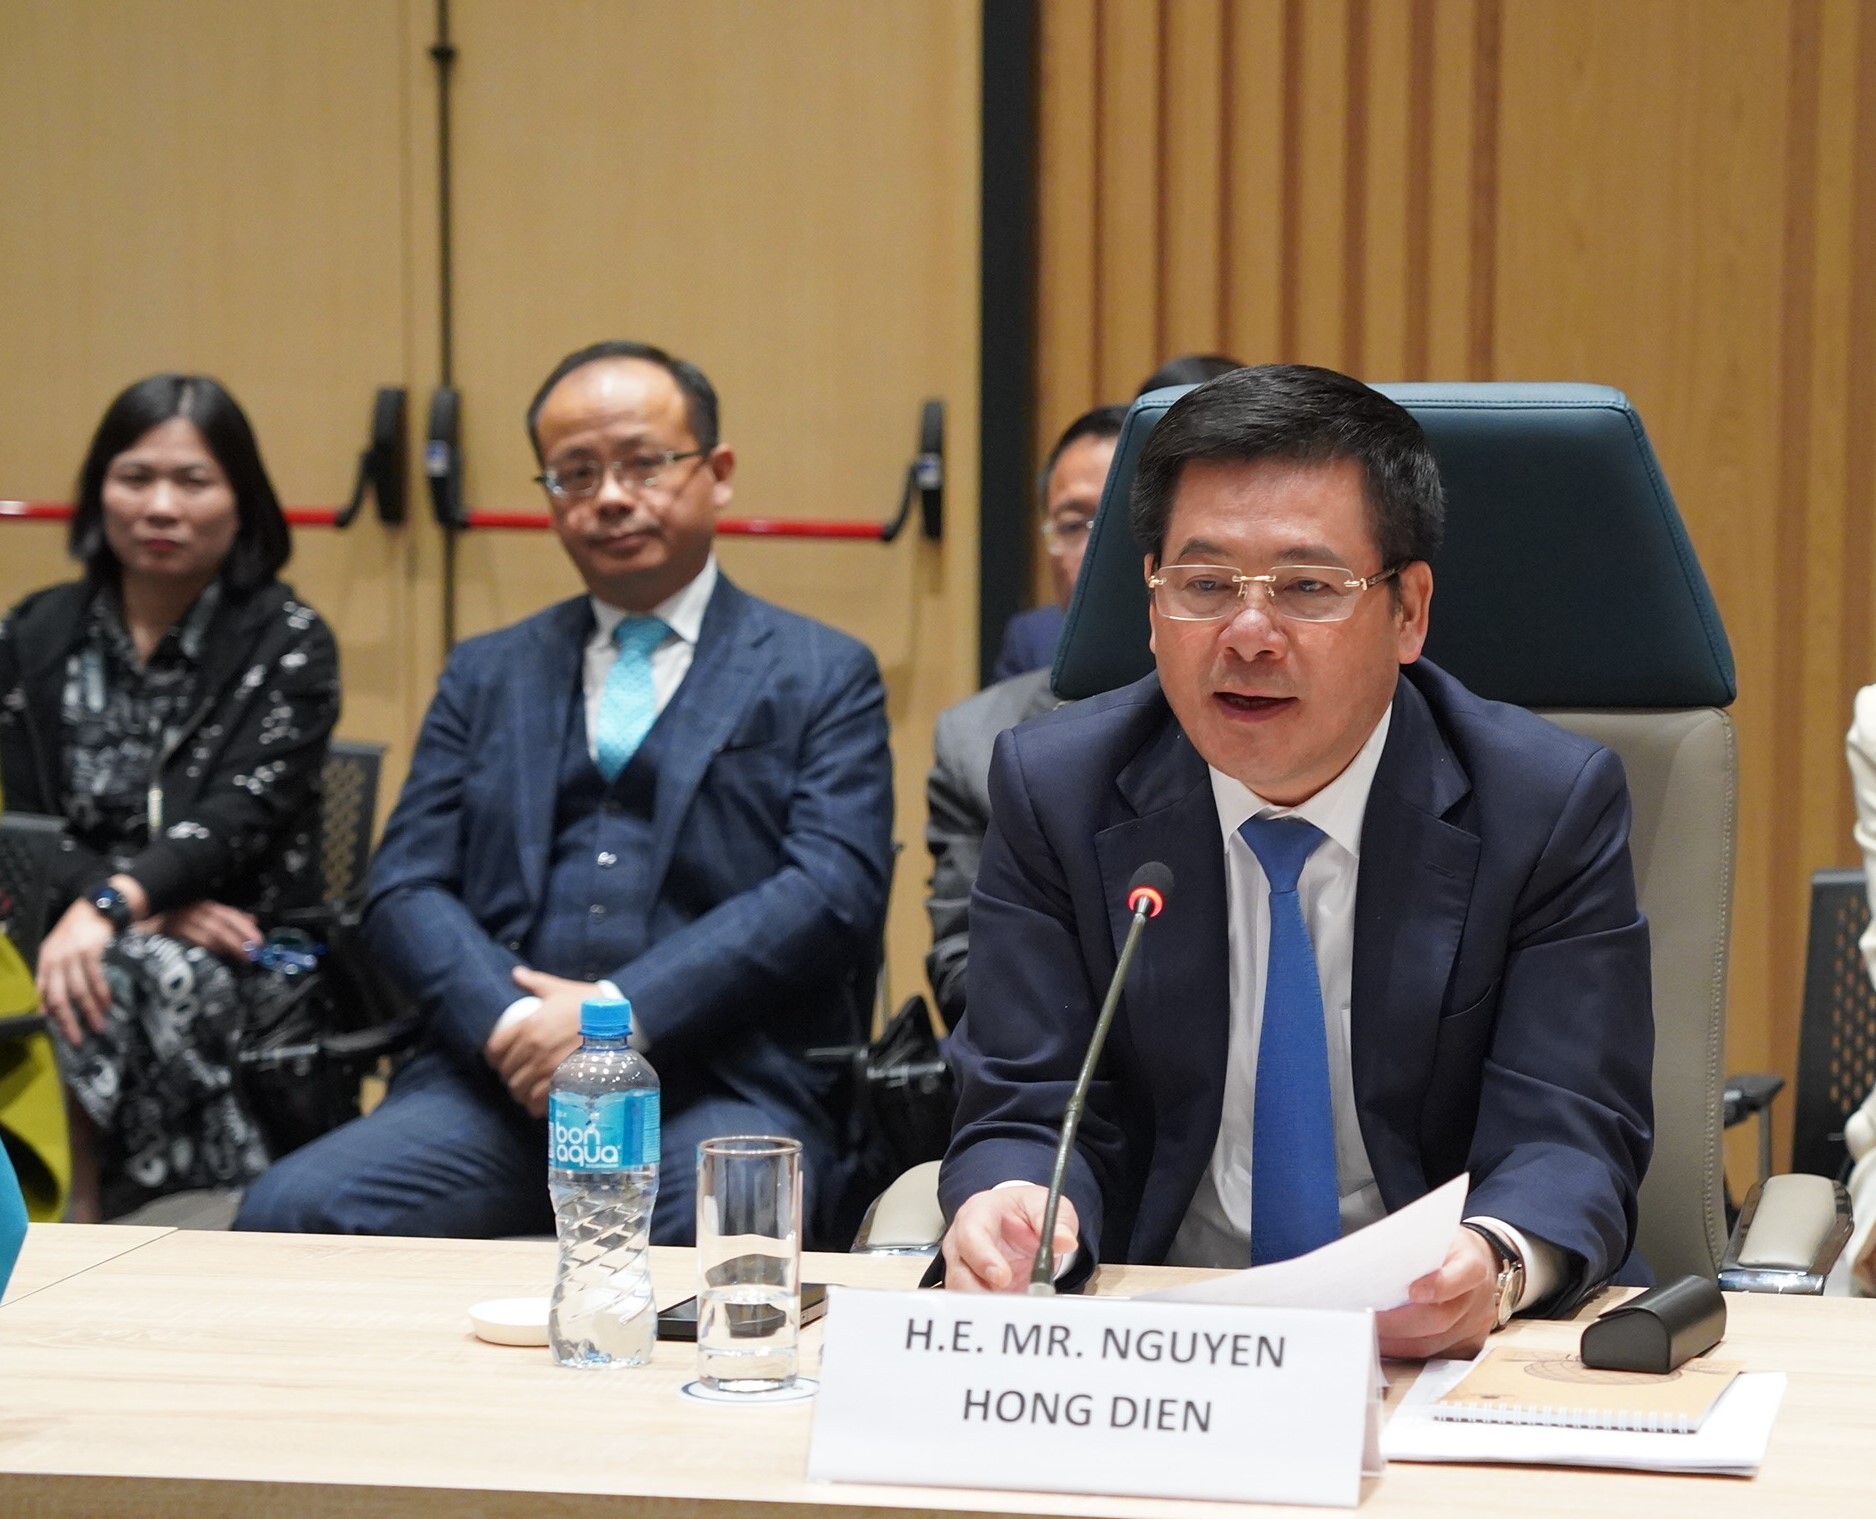 Chùm ảnh: Khóa họp lần thứ 11 UBLCP Việt Nam - Kazakhstan